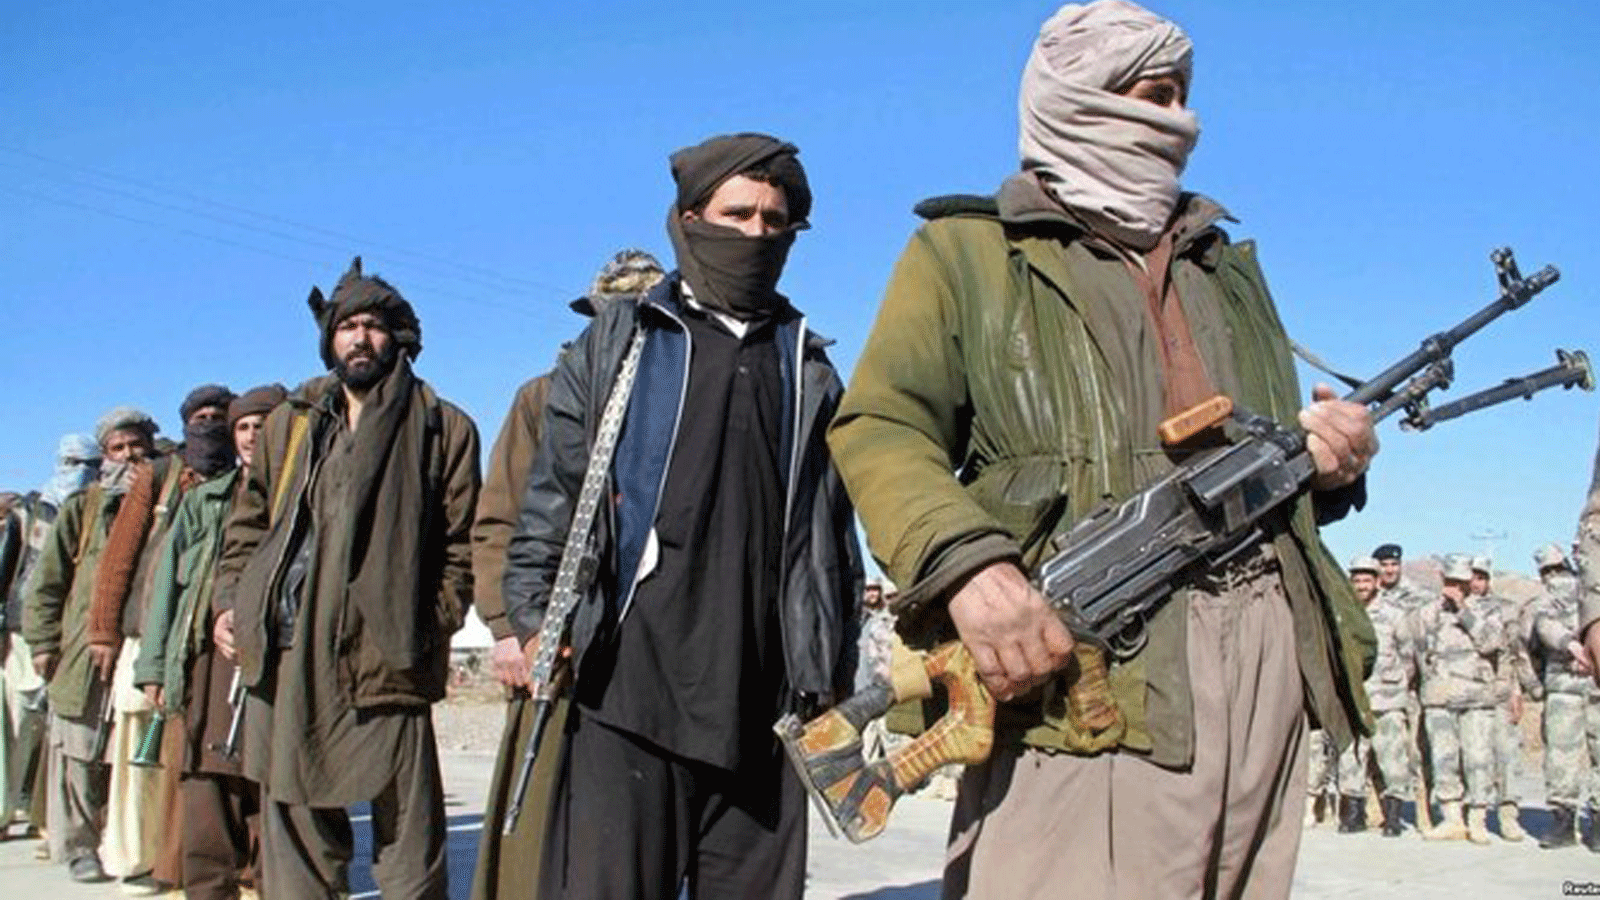 صورة لمقاتلين من طالبان خلال معركتهم للاستيلاء على السلطة